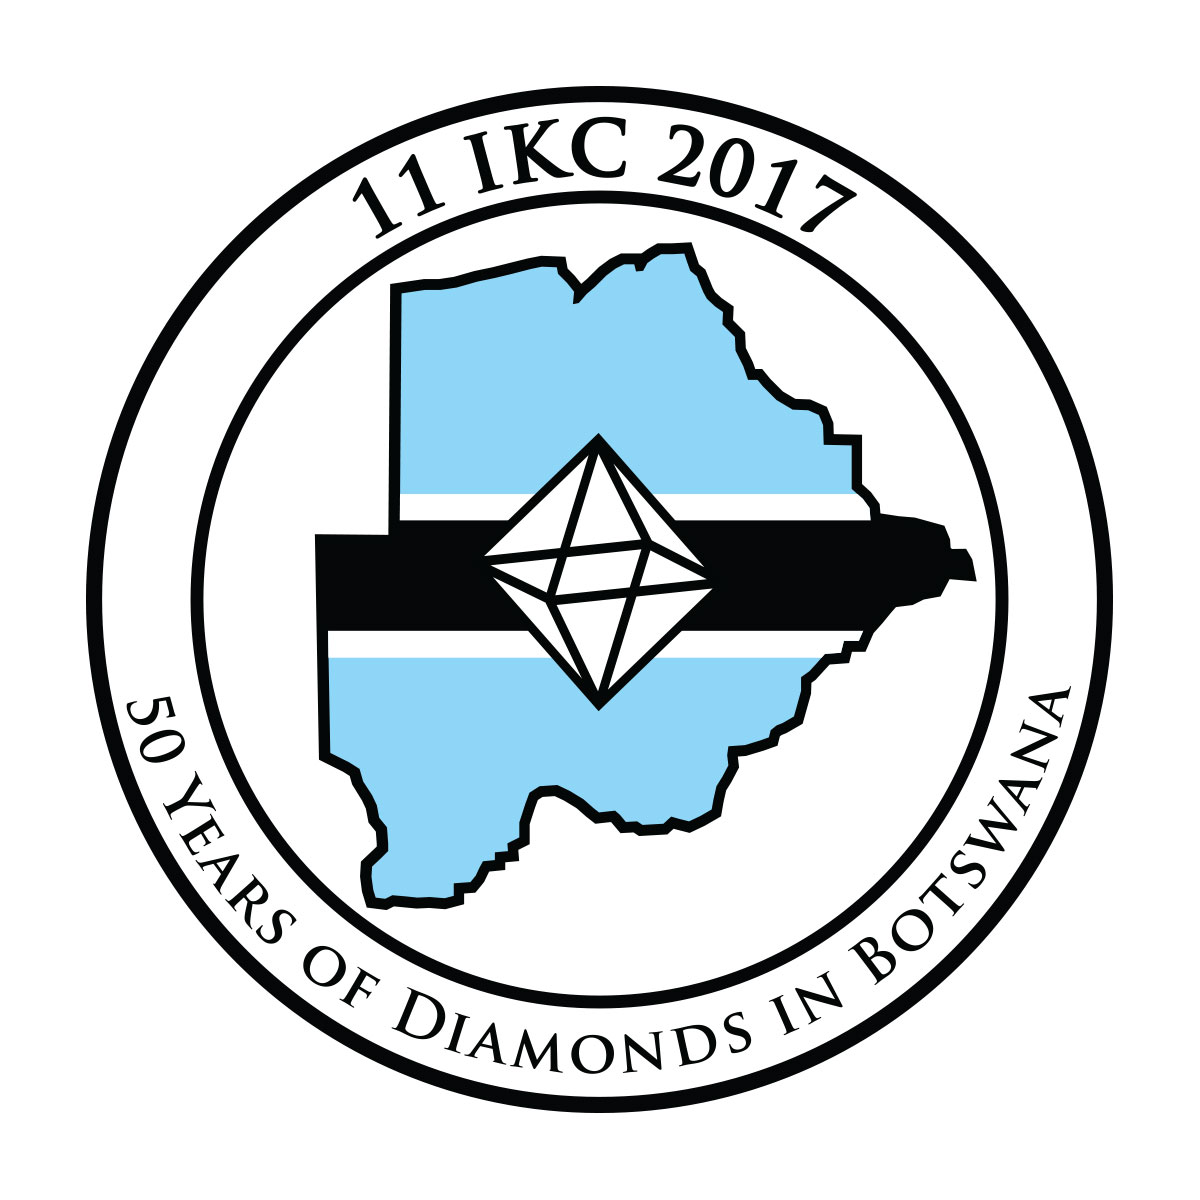 Logo: 11 IKC 2017 - 50 years of diamonds in Botswana